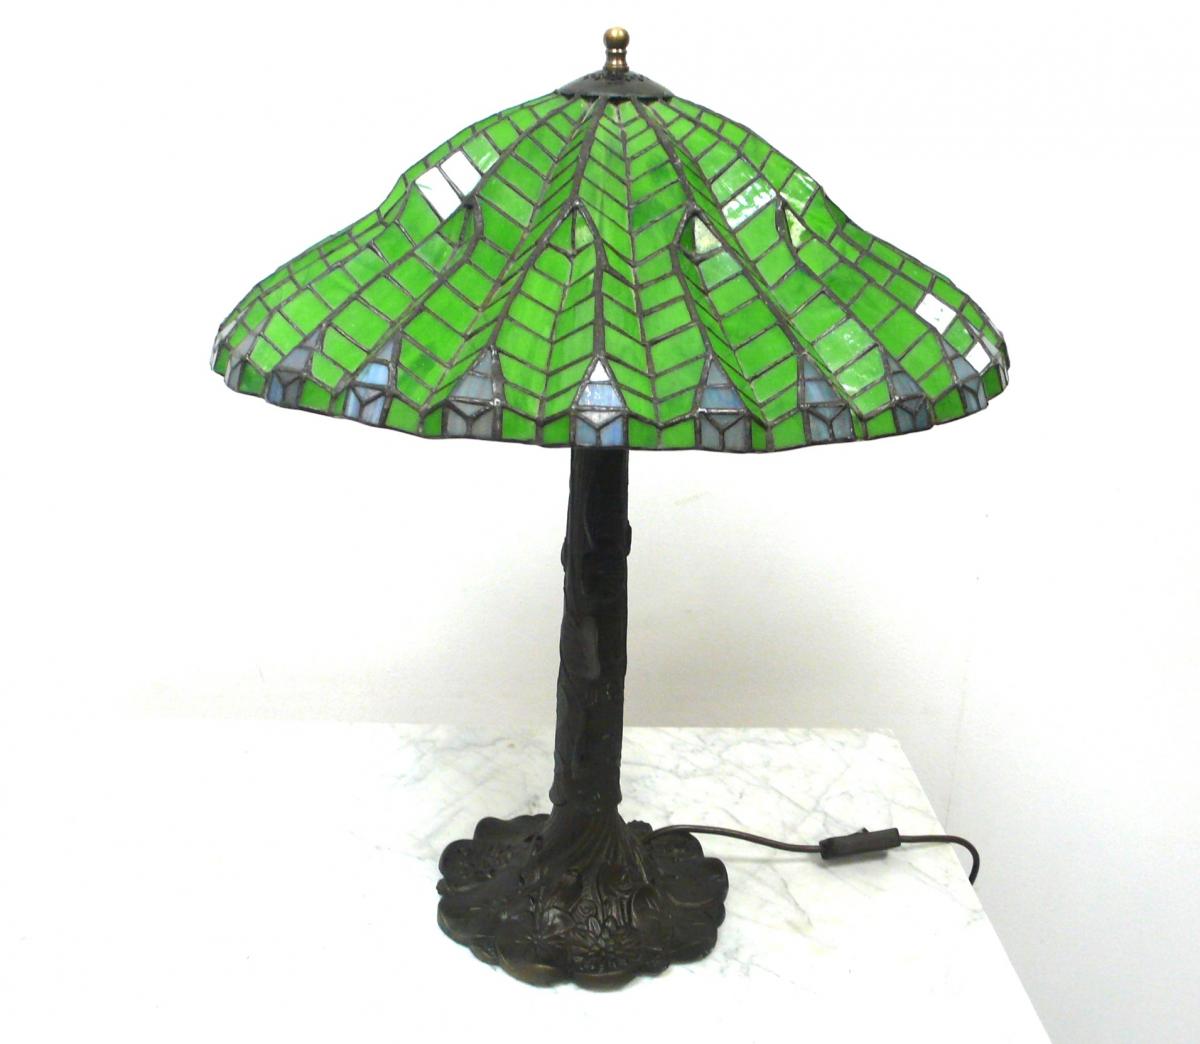 Tiffany Tischlampe Schirm Form Gr�nes Glas Lotus Leaf Stil, Jugendstil Art, sehr seltene sch�ne Form 0